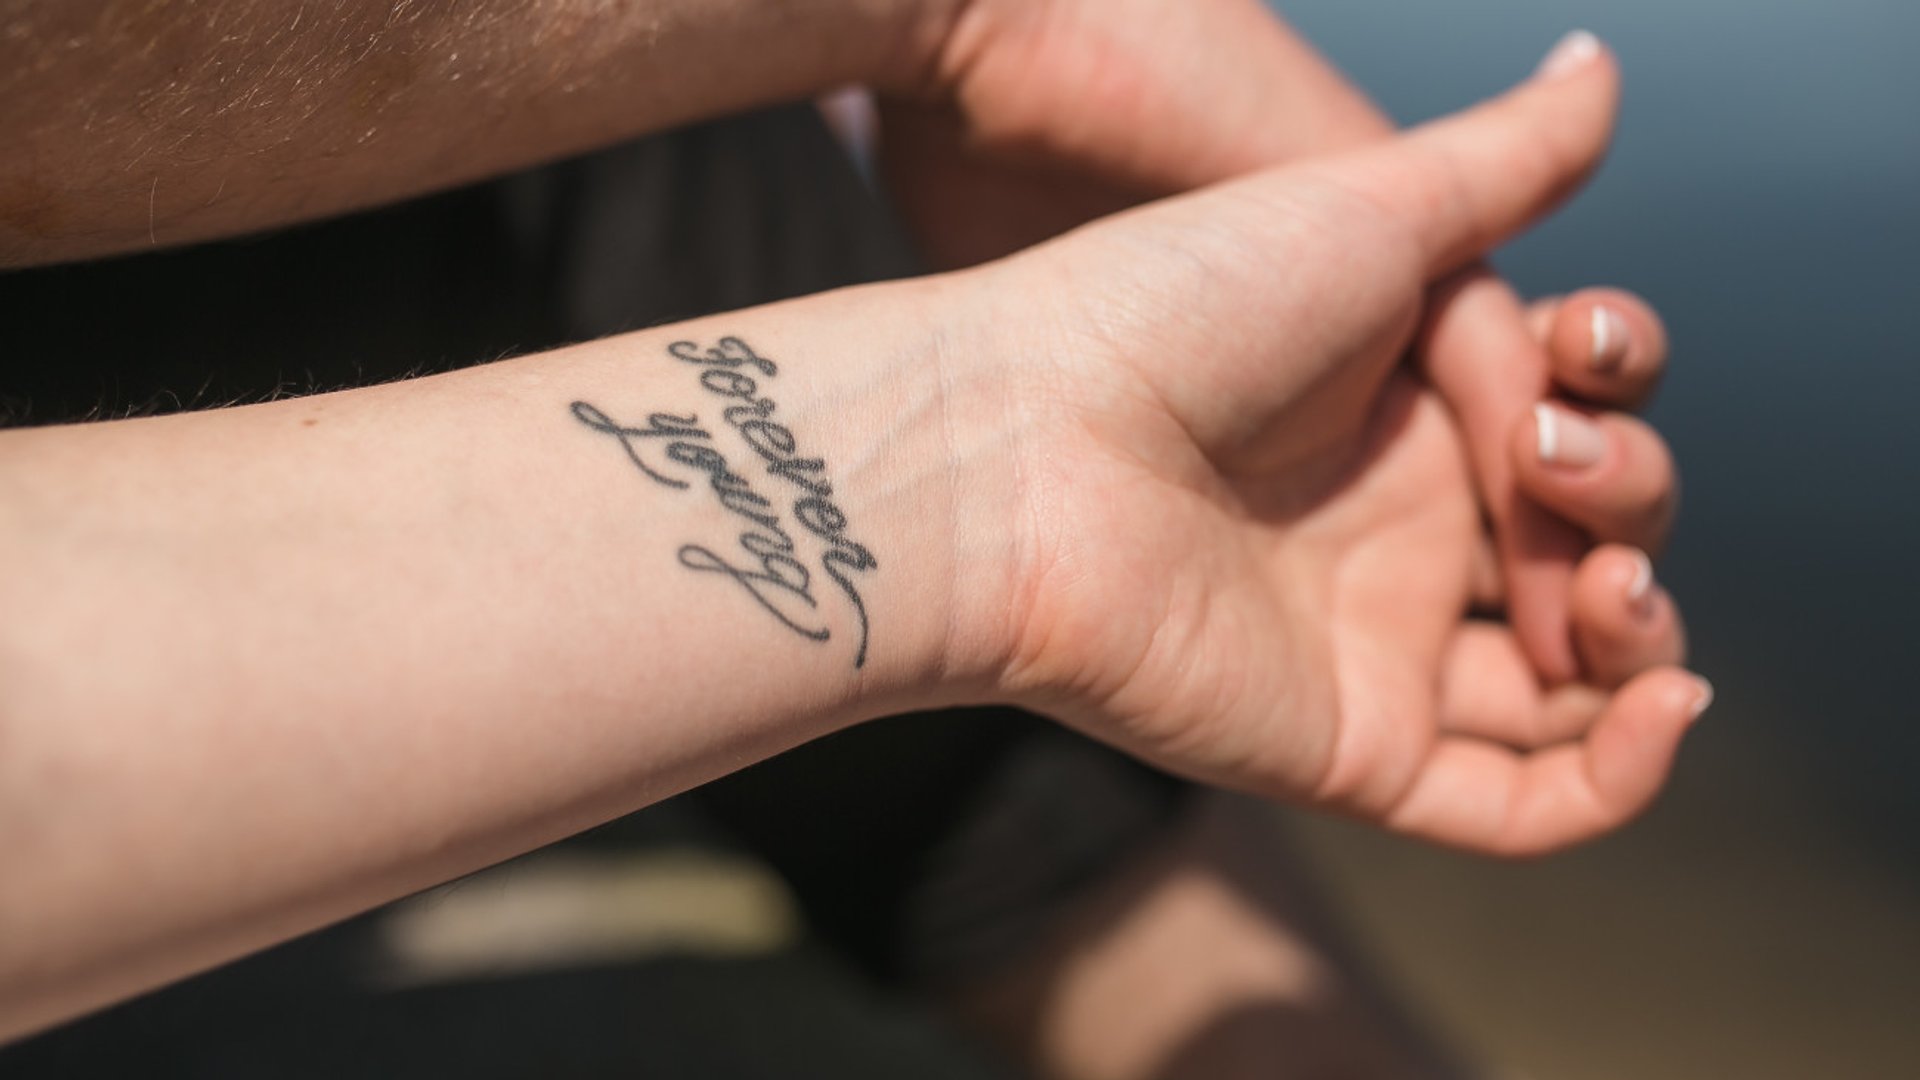 Frau unterarm spruch tattoo 250+ Tattoos